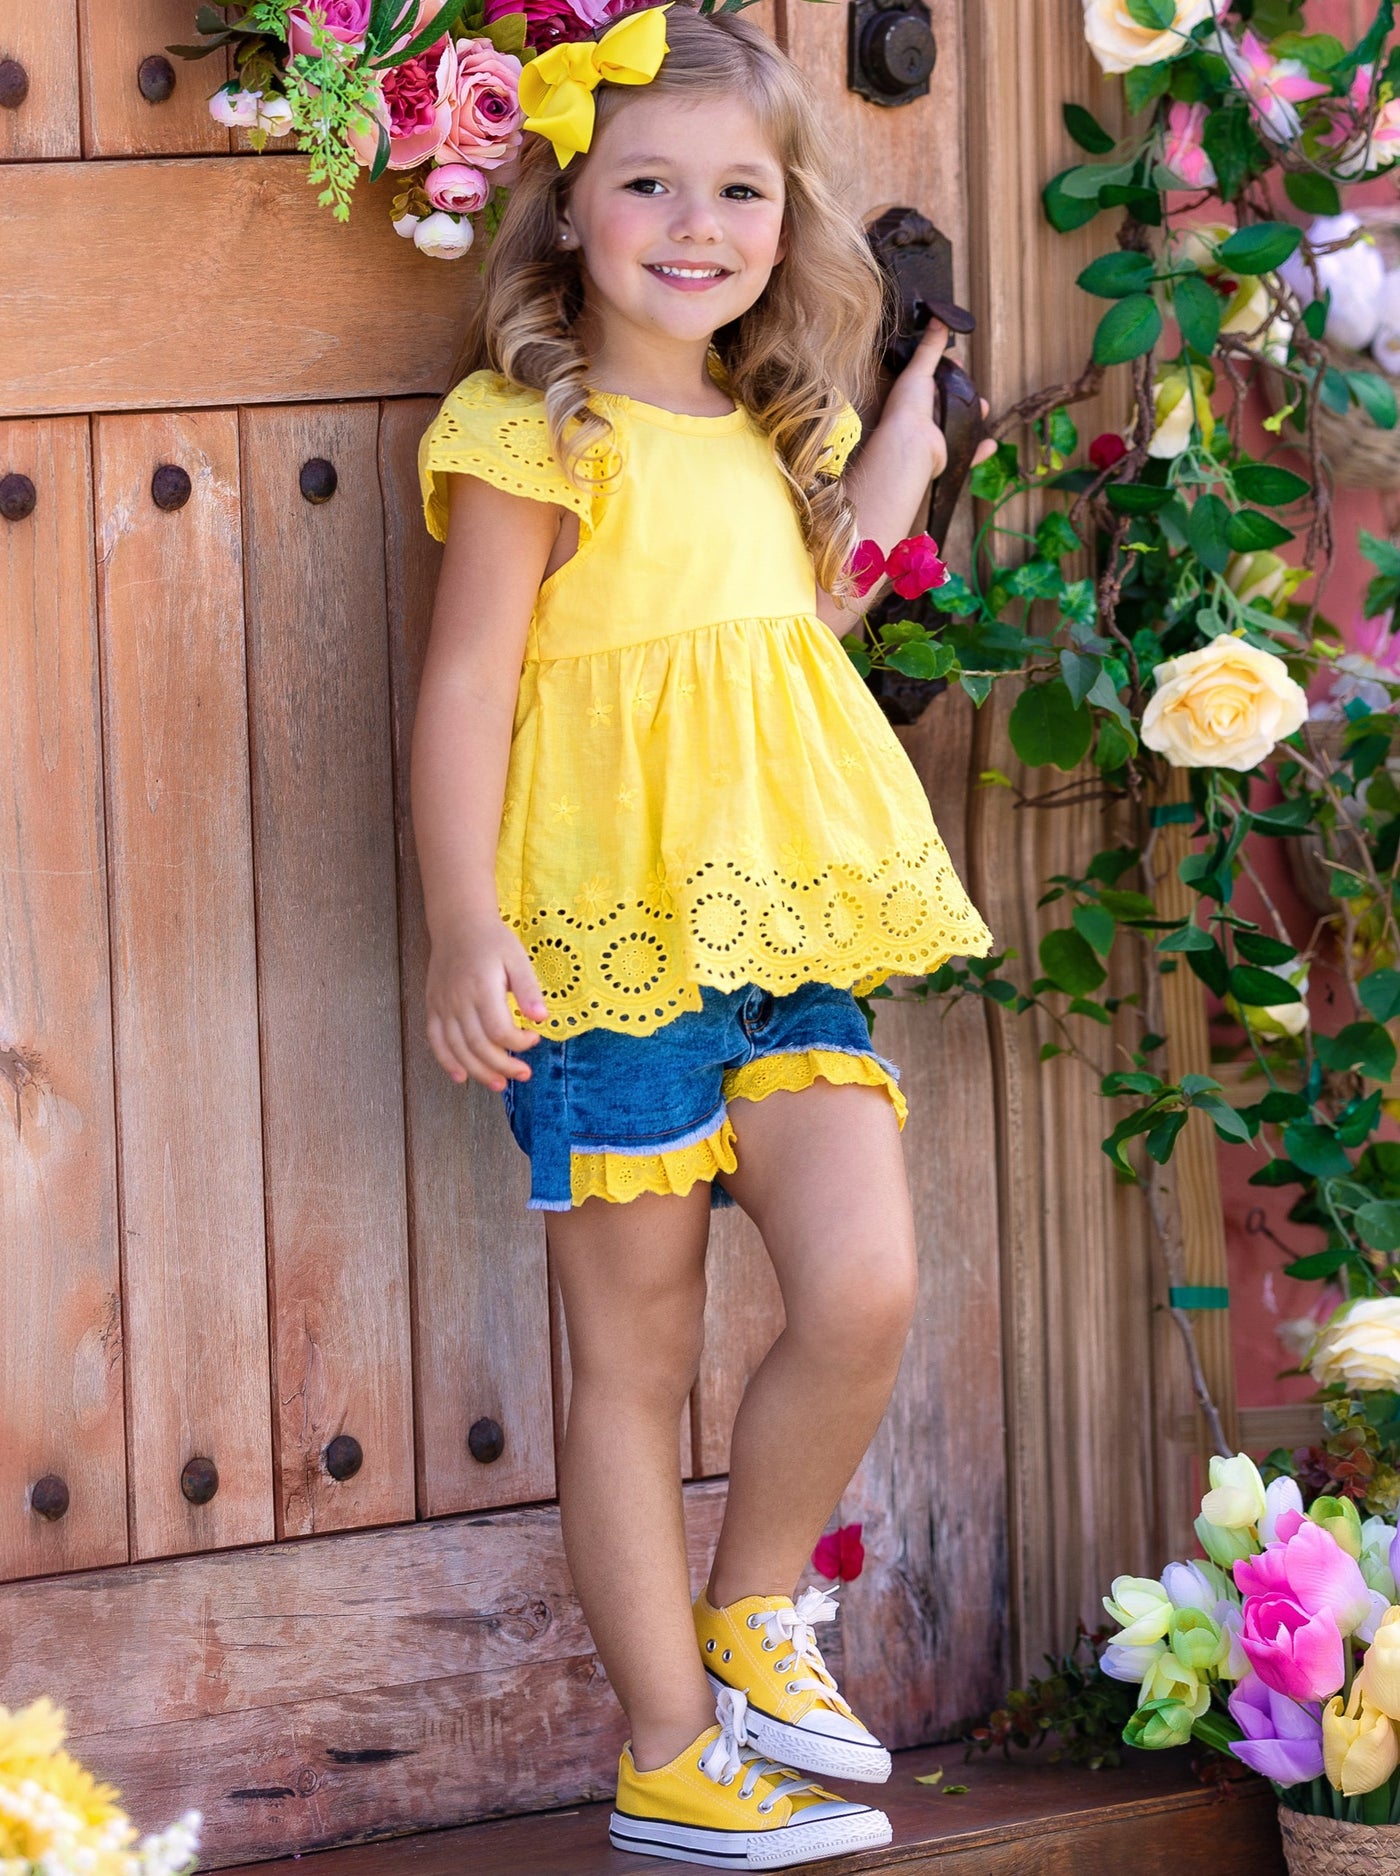 Girls Spring Outfits | Yellow Eyelet Ruffle Top & Denim Shorts Set